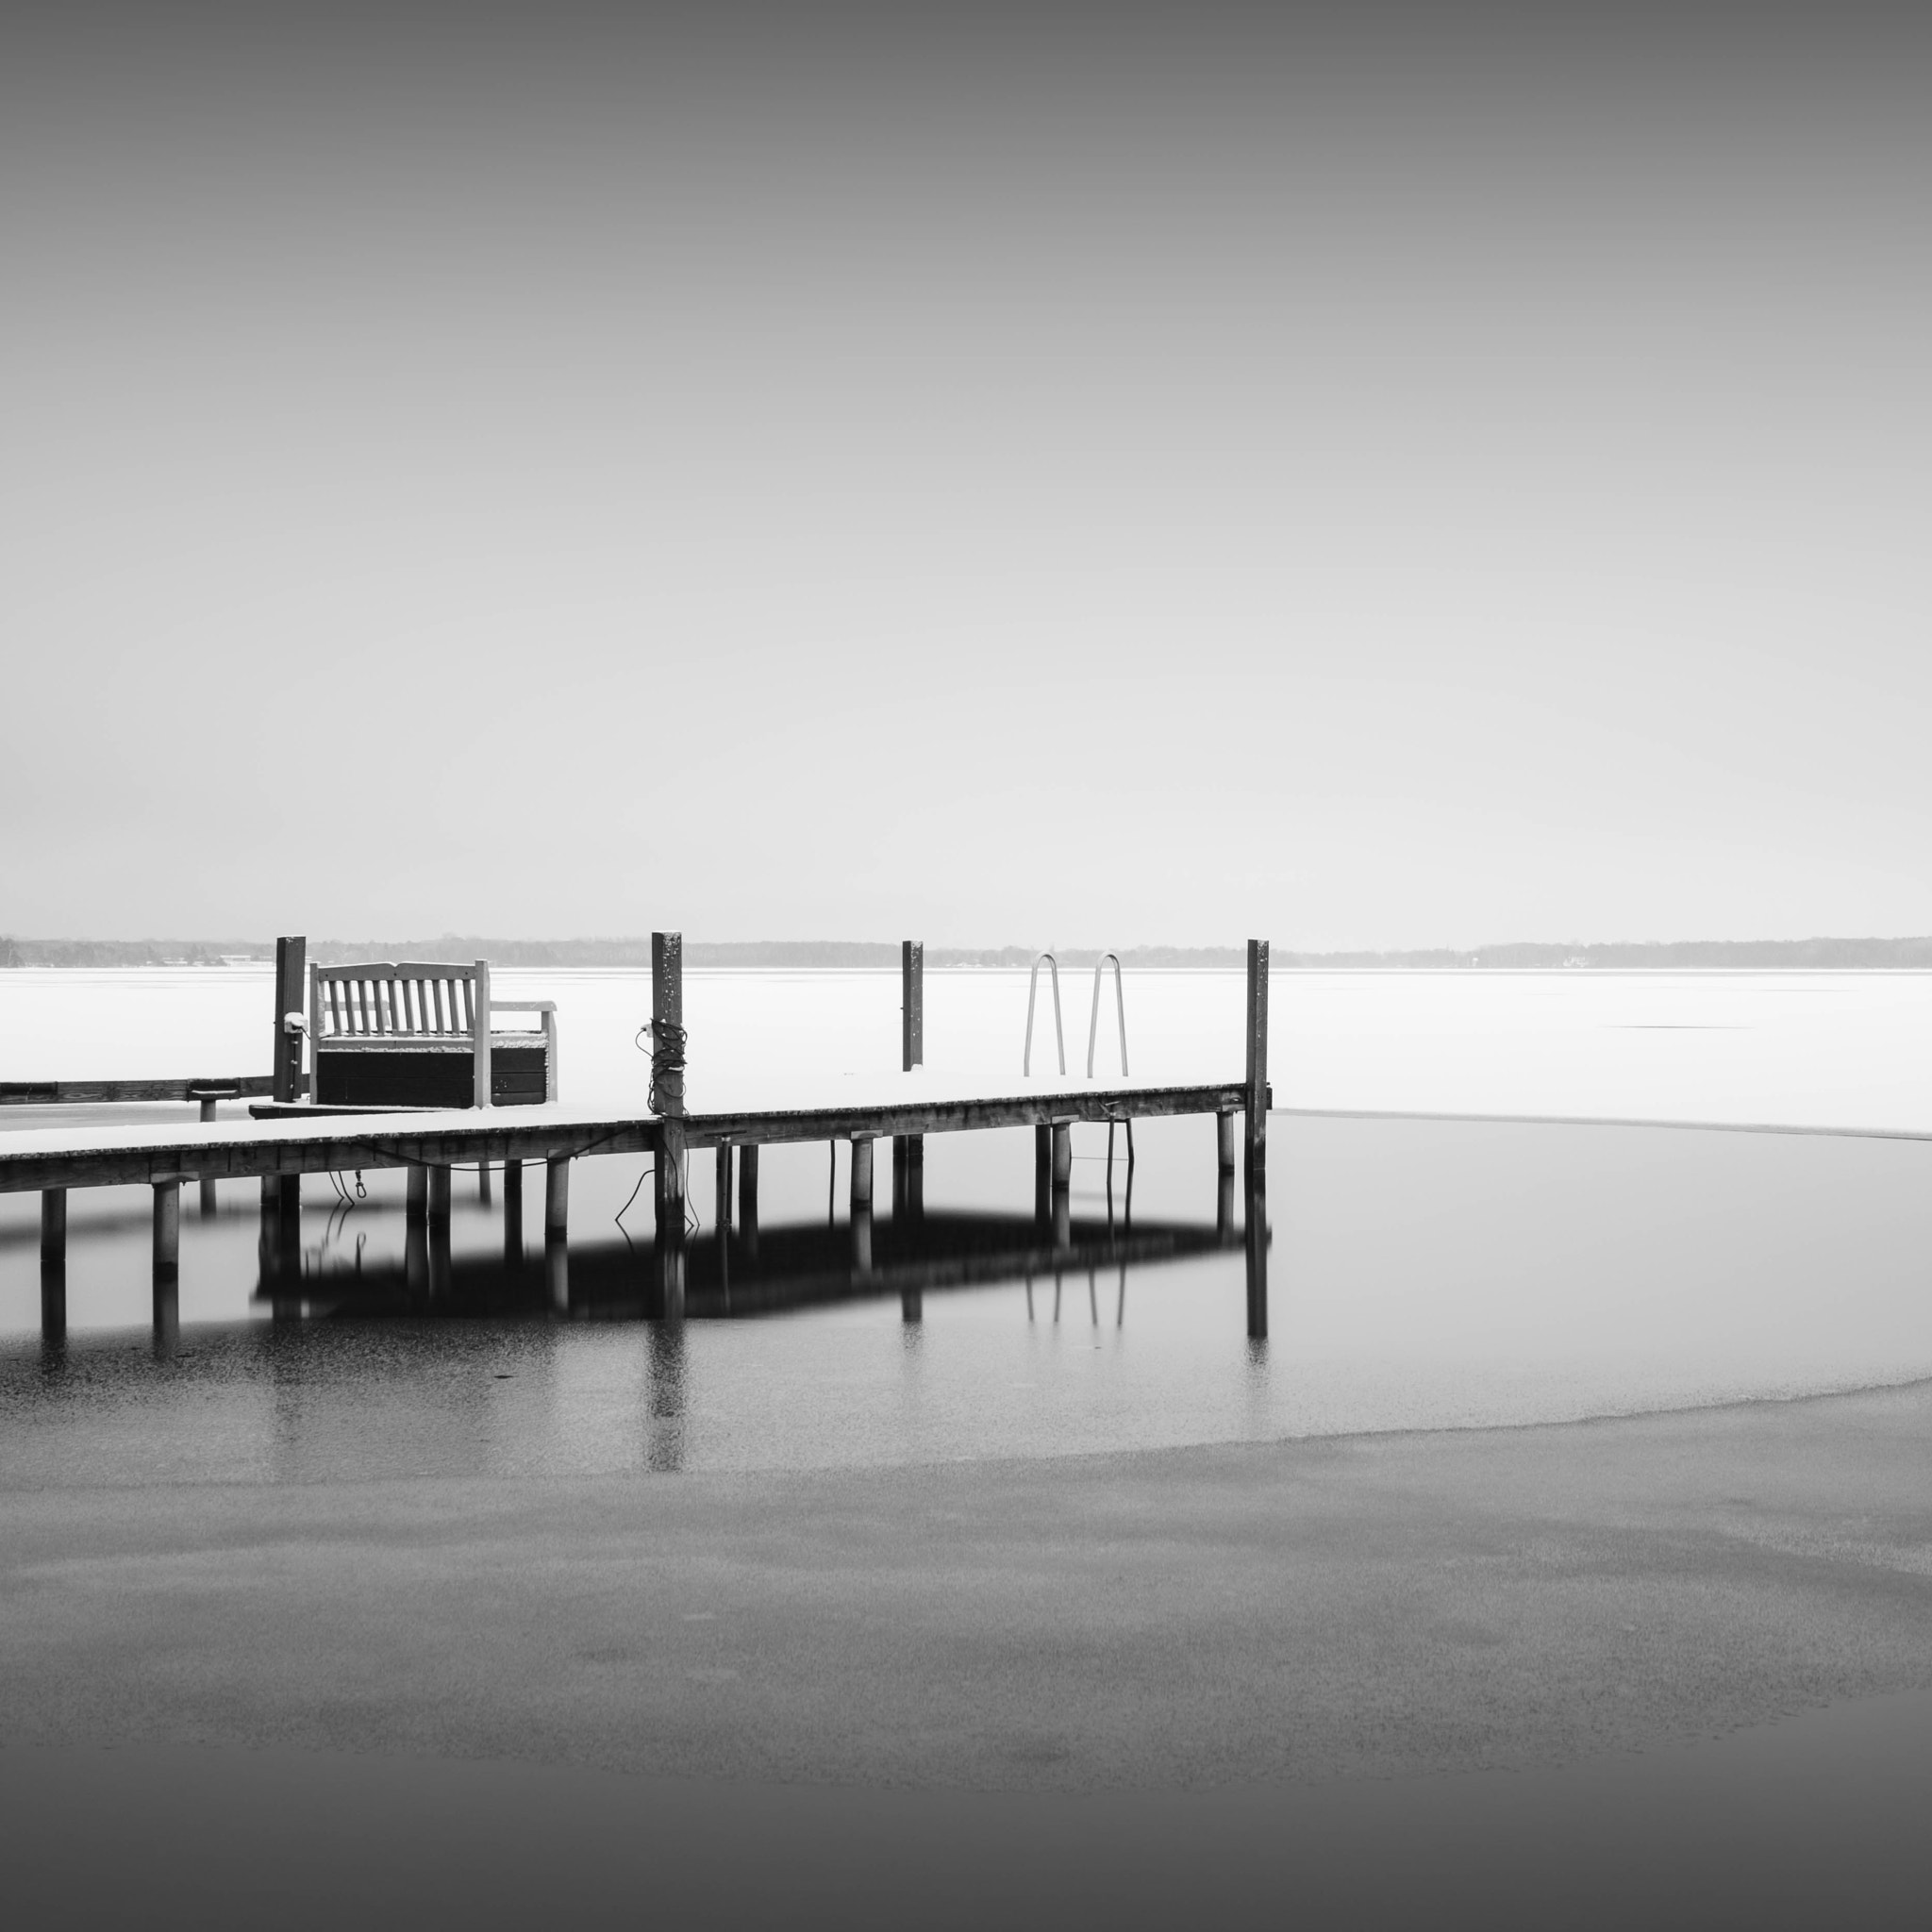 Nikon D5500 sample photo. Pier at lake müggelsee | berlin (2017) photography